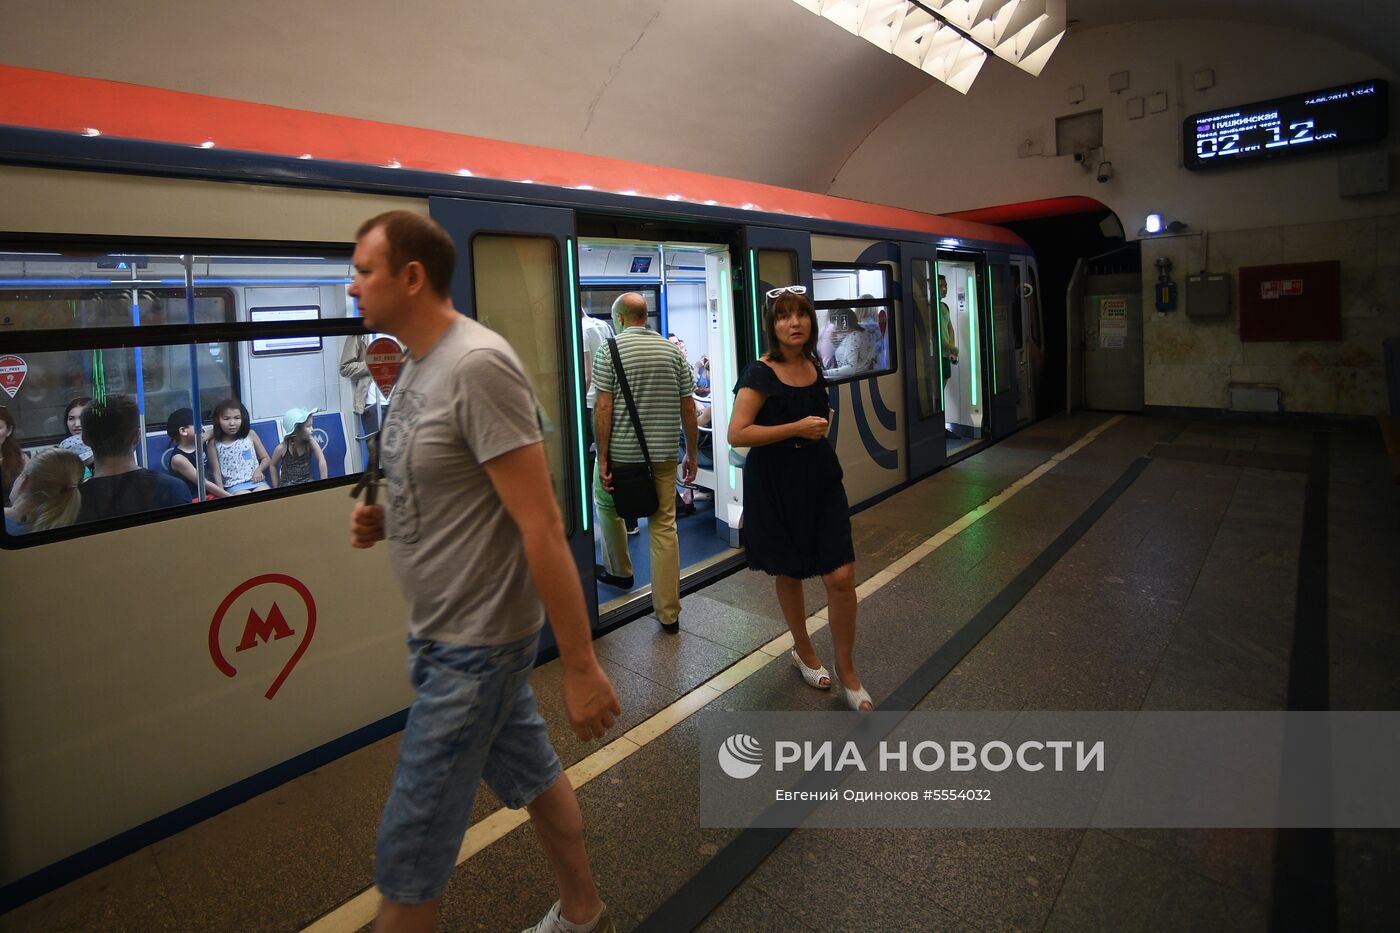 Табло обратного отсчета времени в московском метро